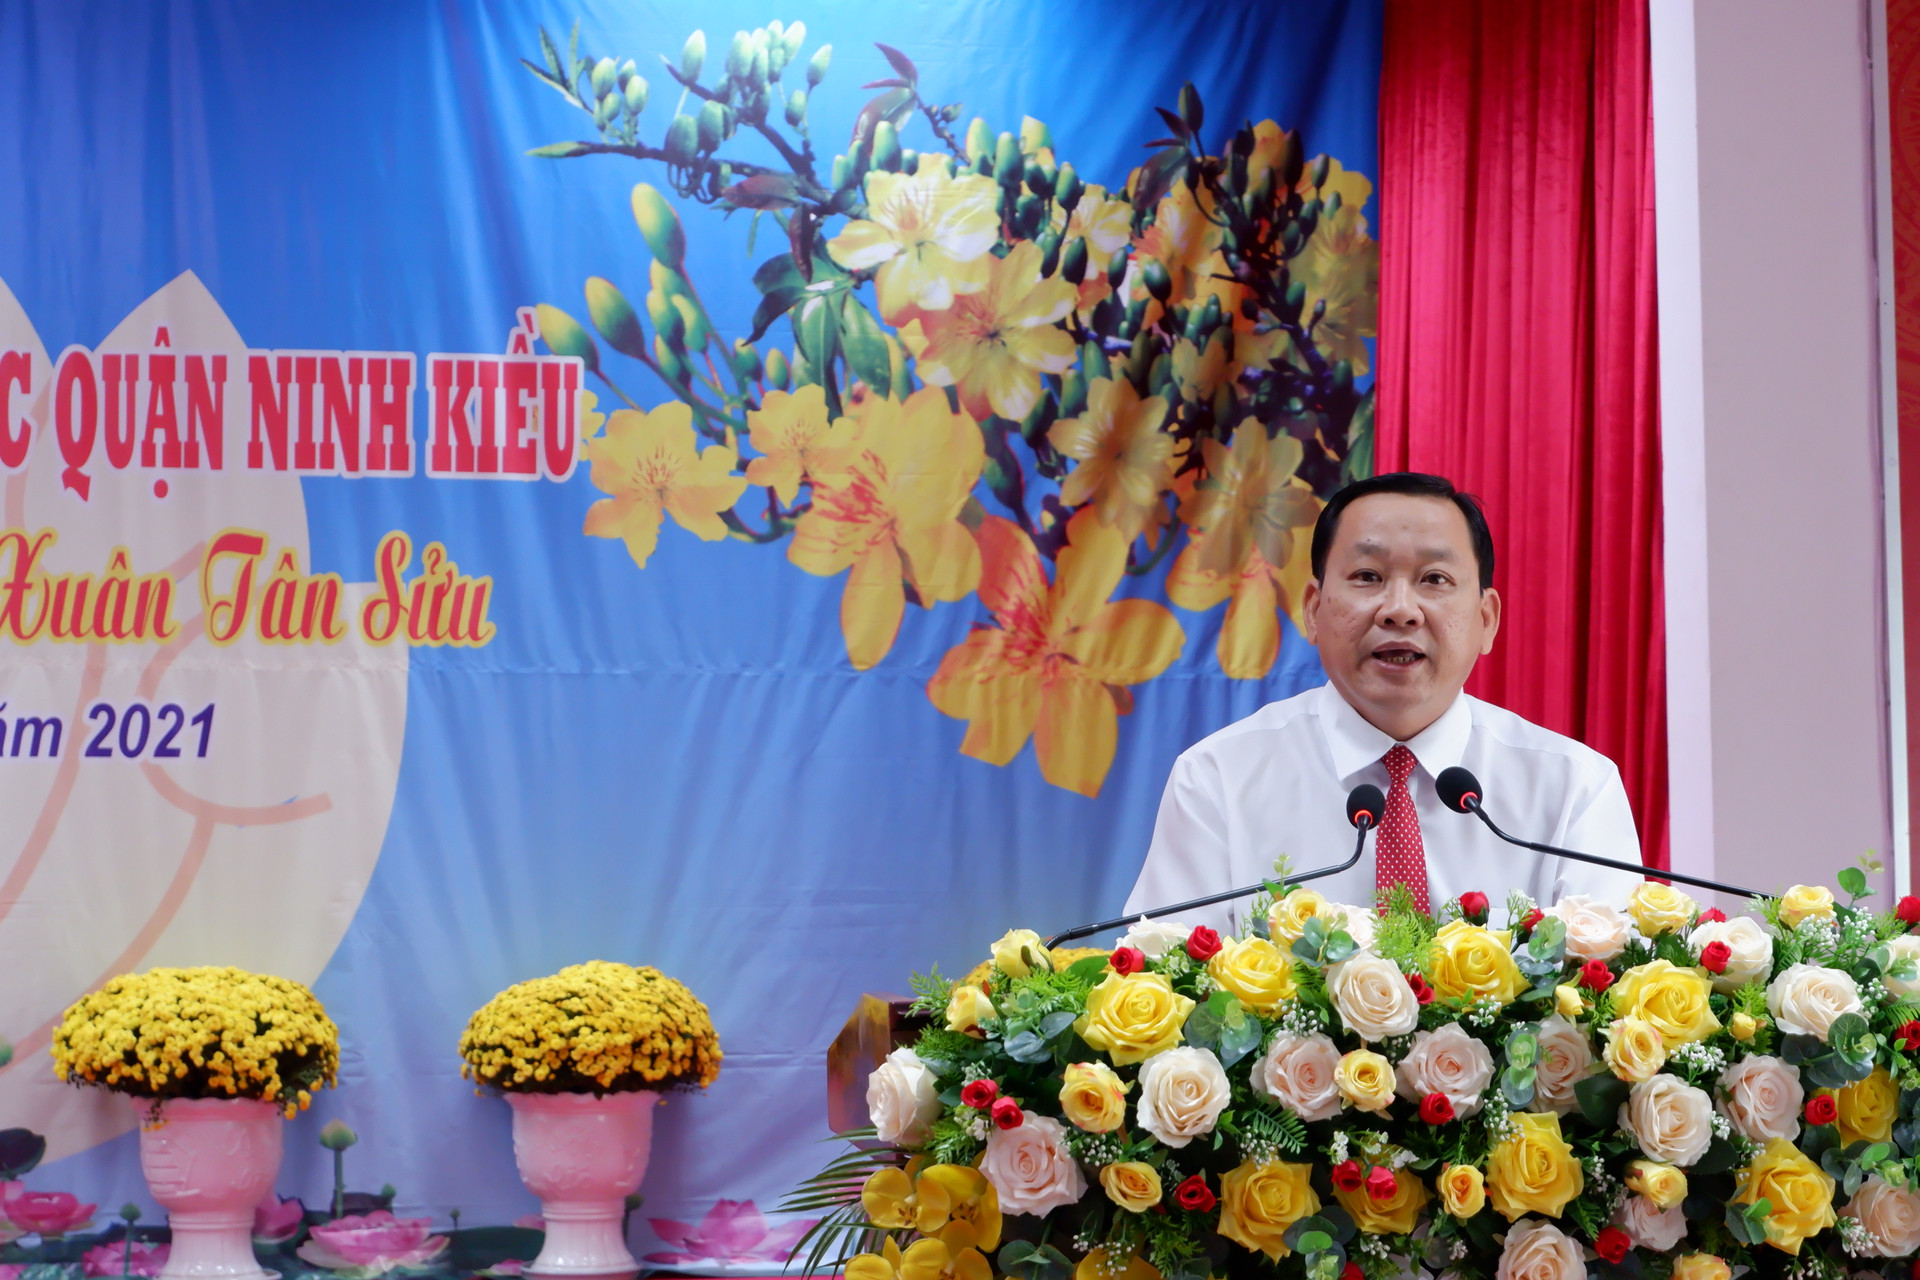 Phó Bí thư Thường trực Quận ủy Ninh Kiều Trần Tiến Dũng phát biểu chúc mừng tại ngày hội.